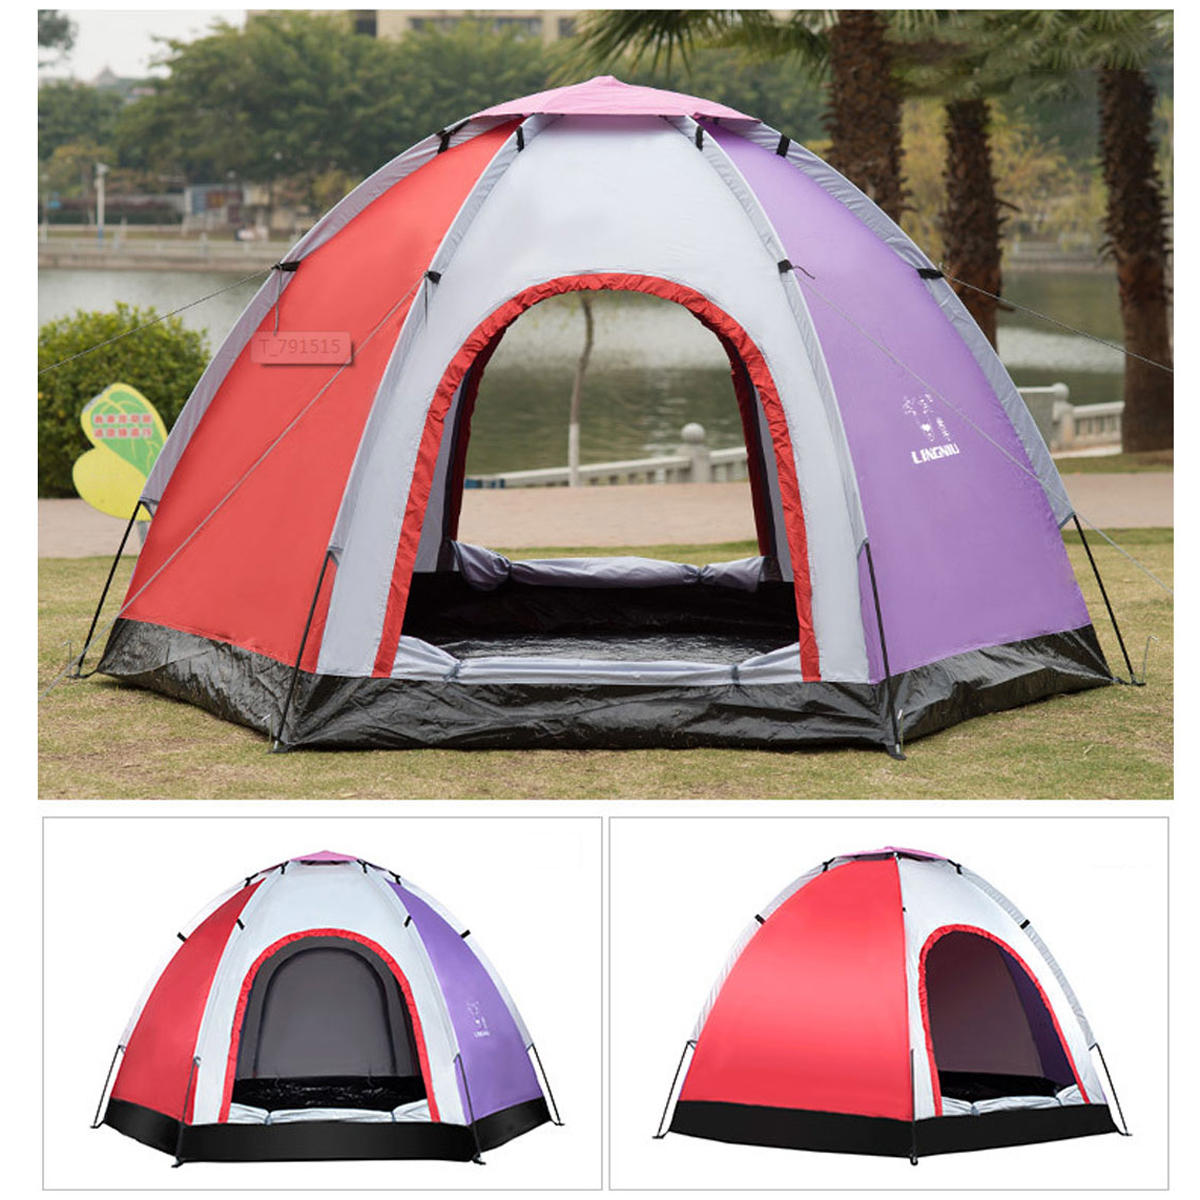 Υπαίθριο 5-6 άτομα Pop-Up Camping Tenda Αδιάβροχο UV Proof Beach Sunshade Shelter  